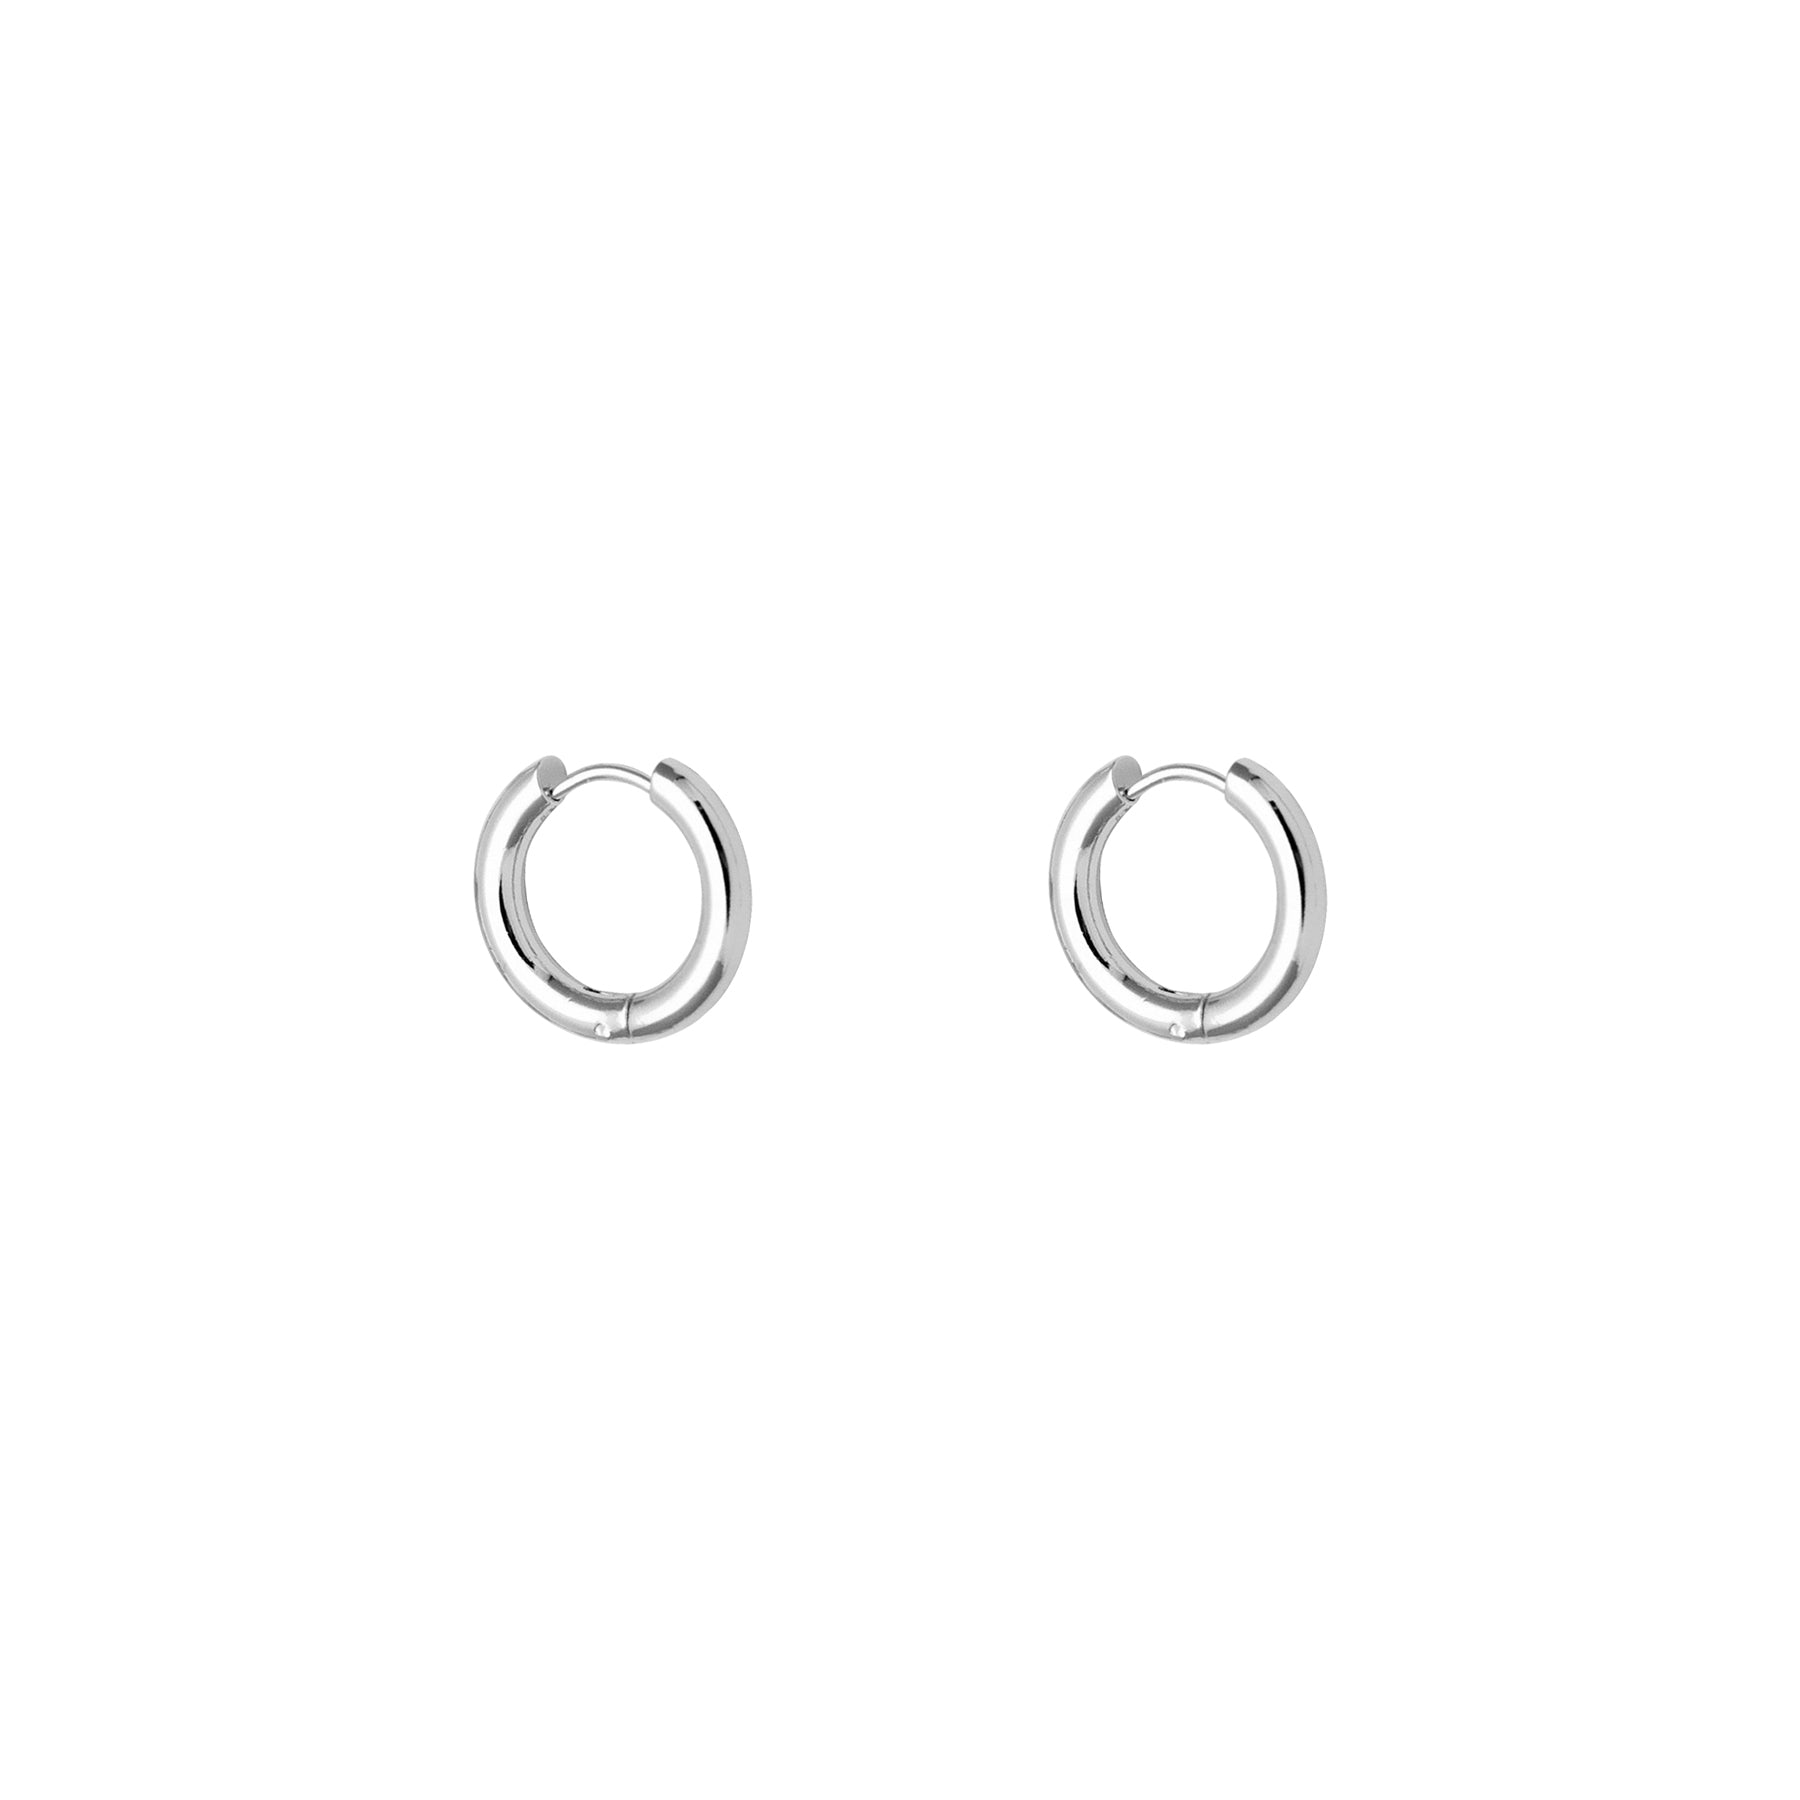 Boucles d'oreilles petits anneaux classiques argent - Lost & Faune